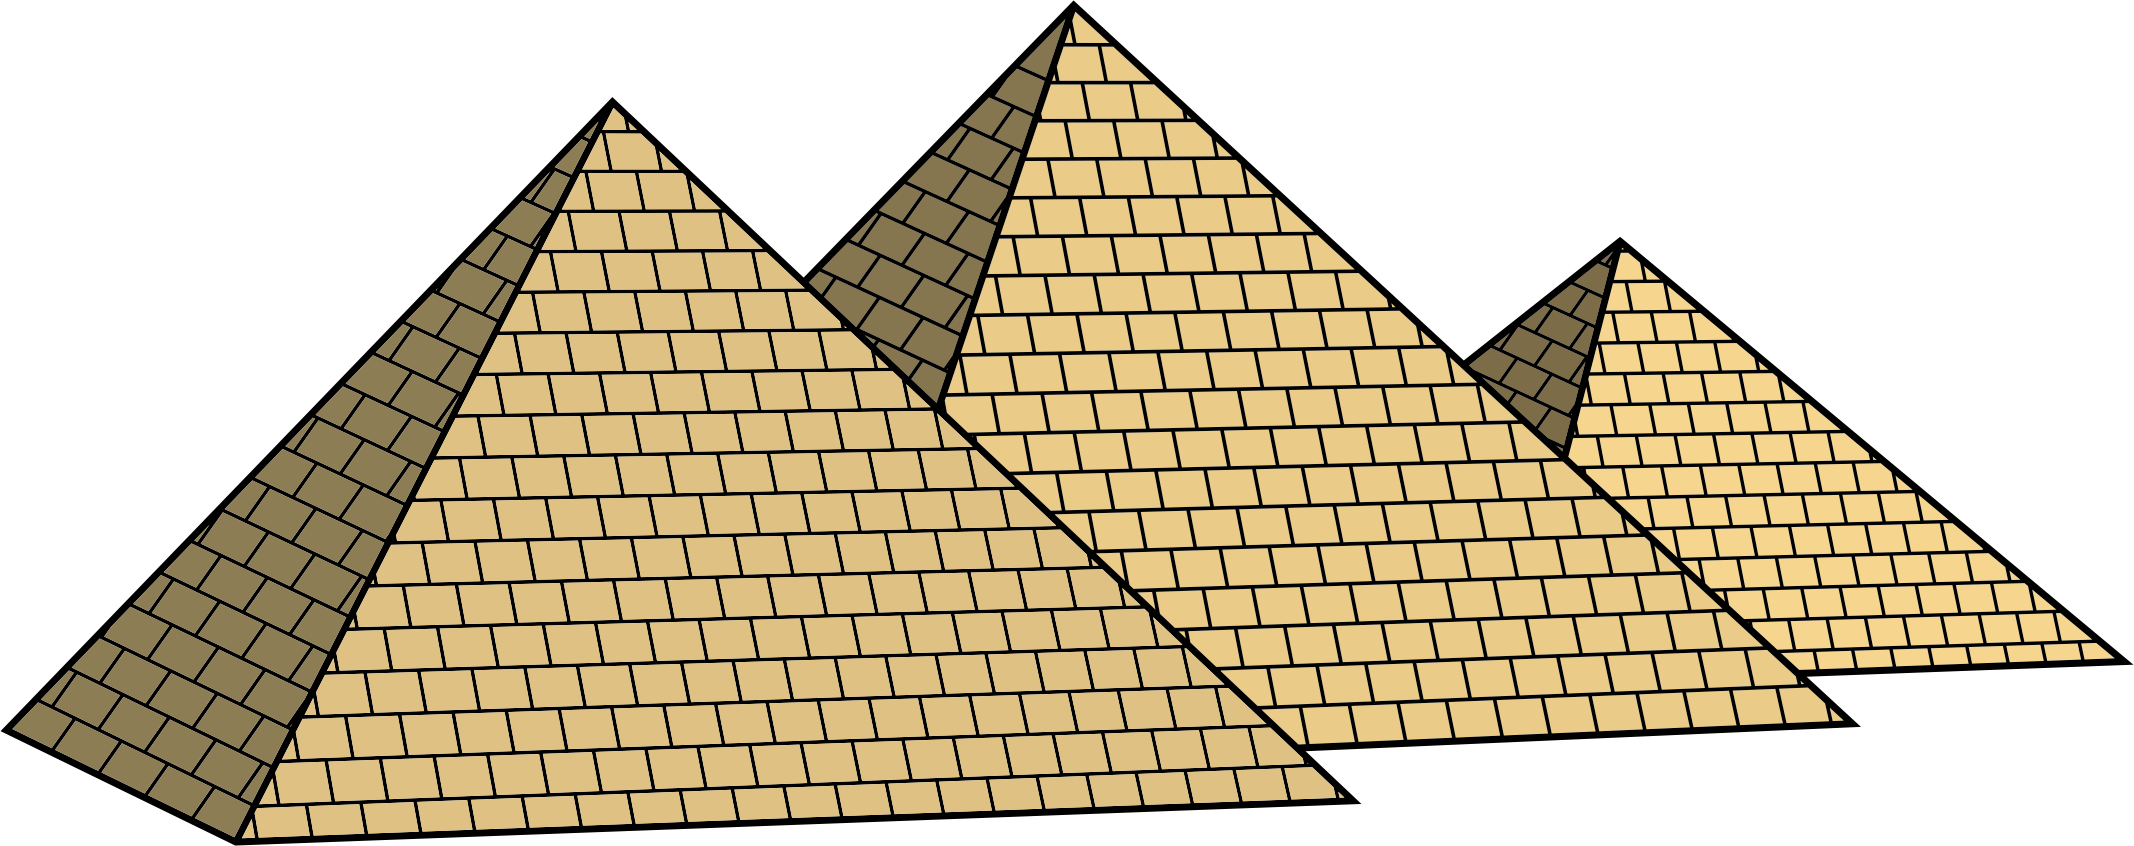 Pyramids Transparent Png Egyptian Pyramids Png